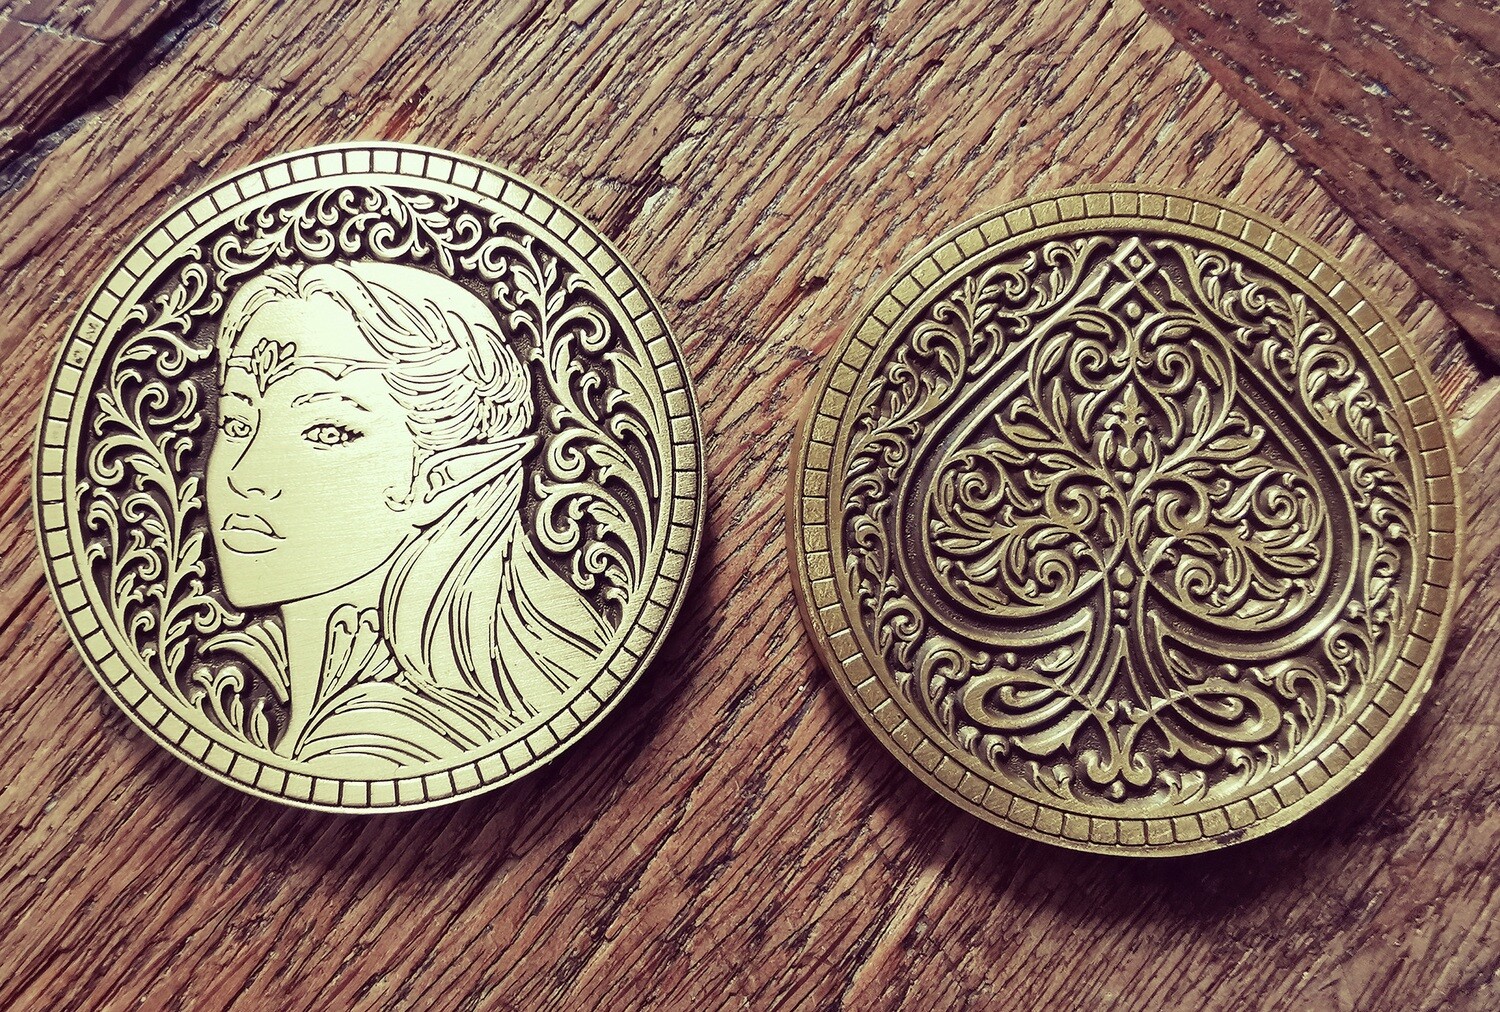 The Elven Coin